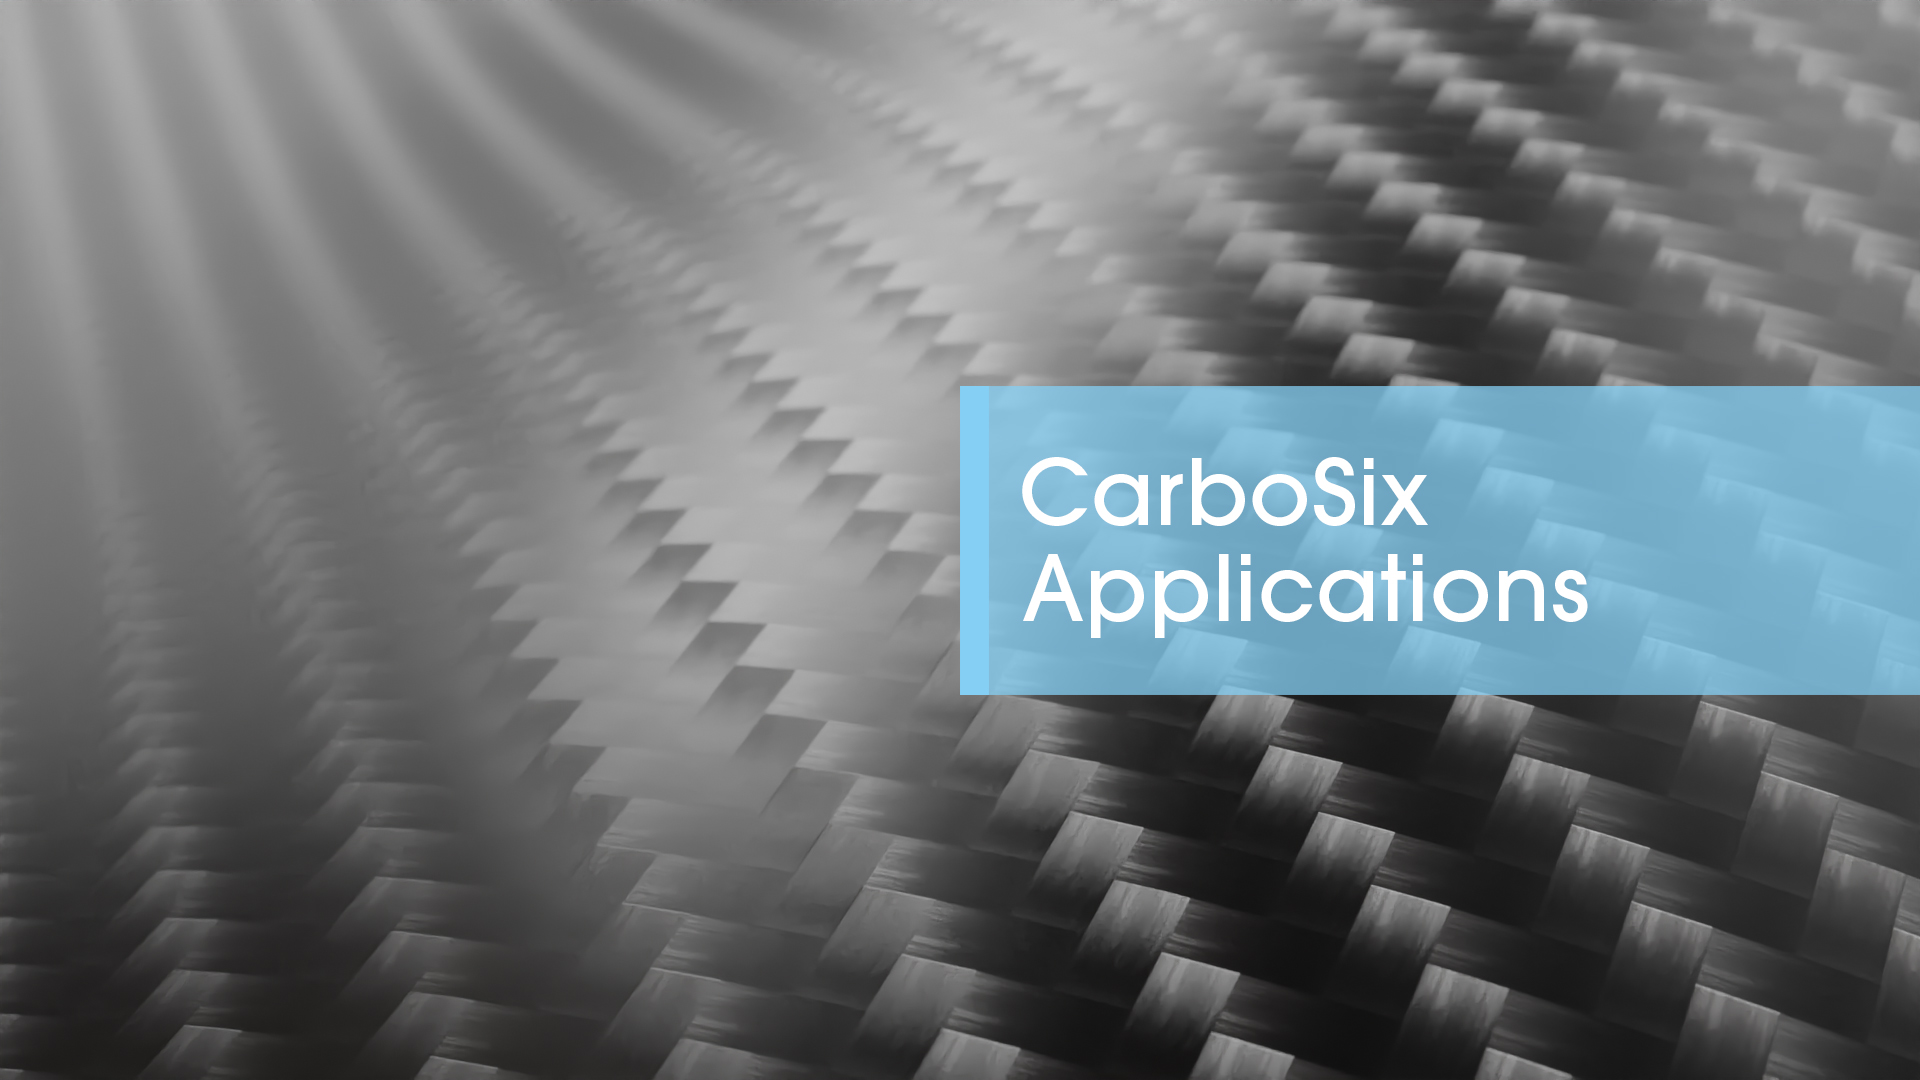 Carbosix applications